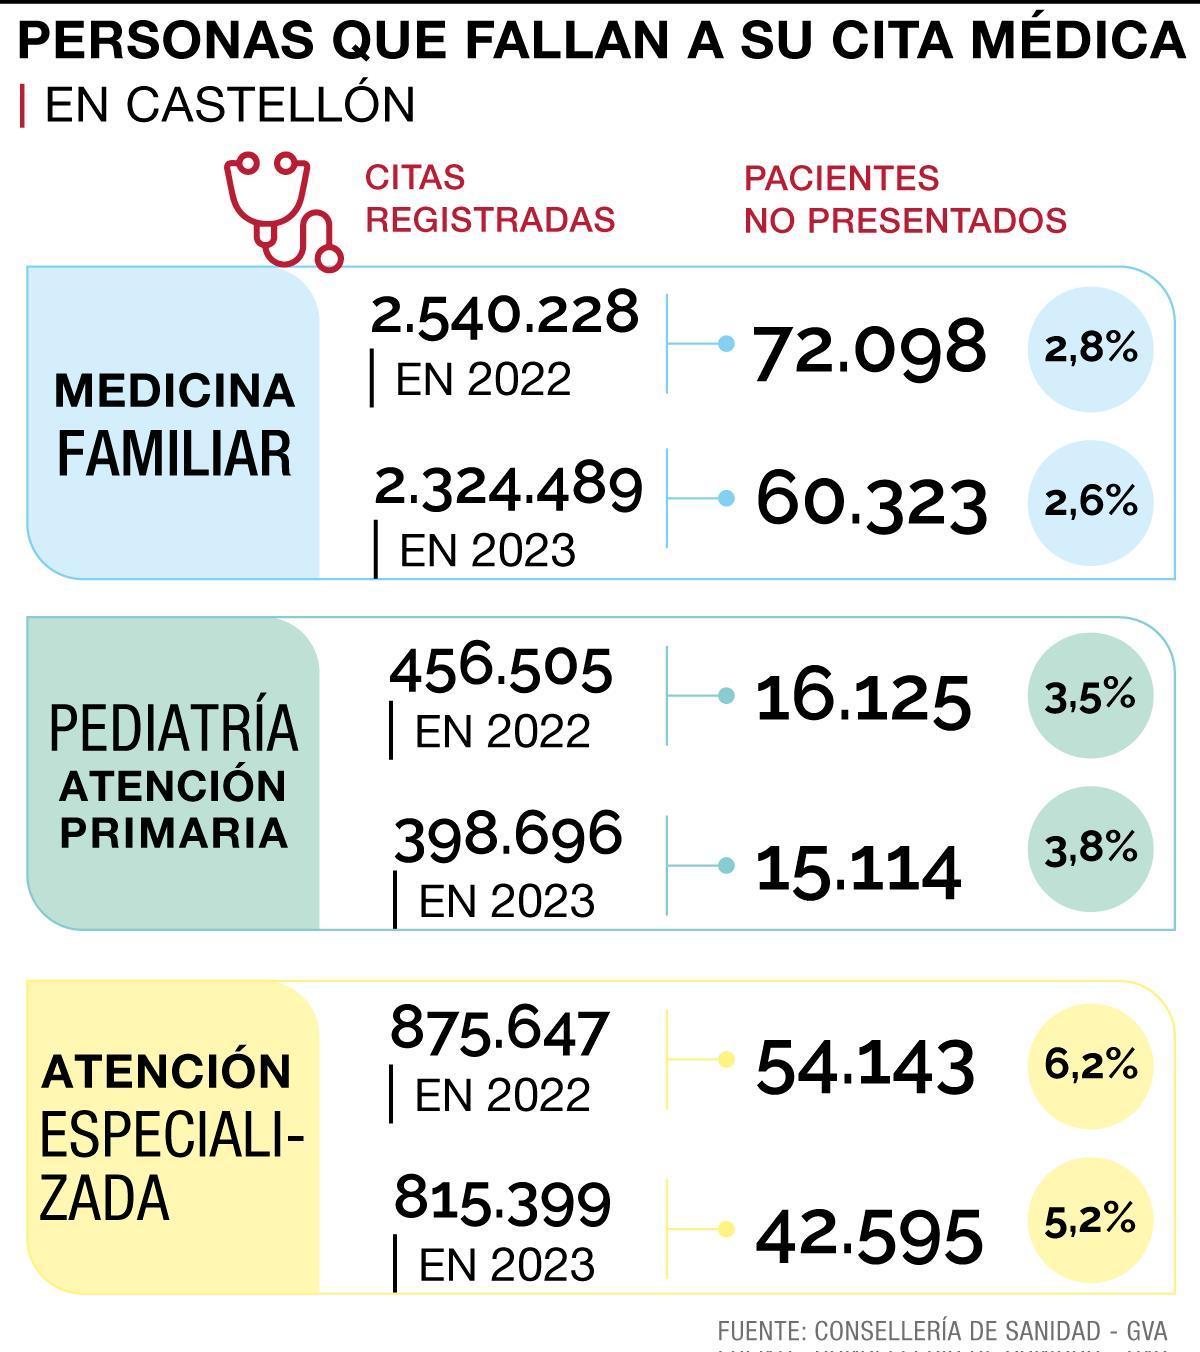 Pacientes que fallan a la cita médica en Castellón